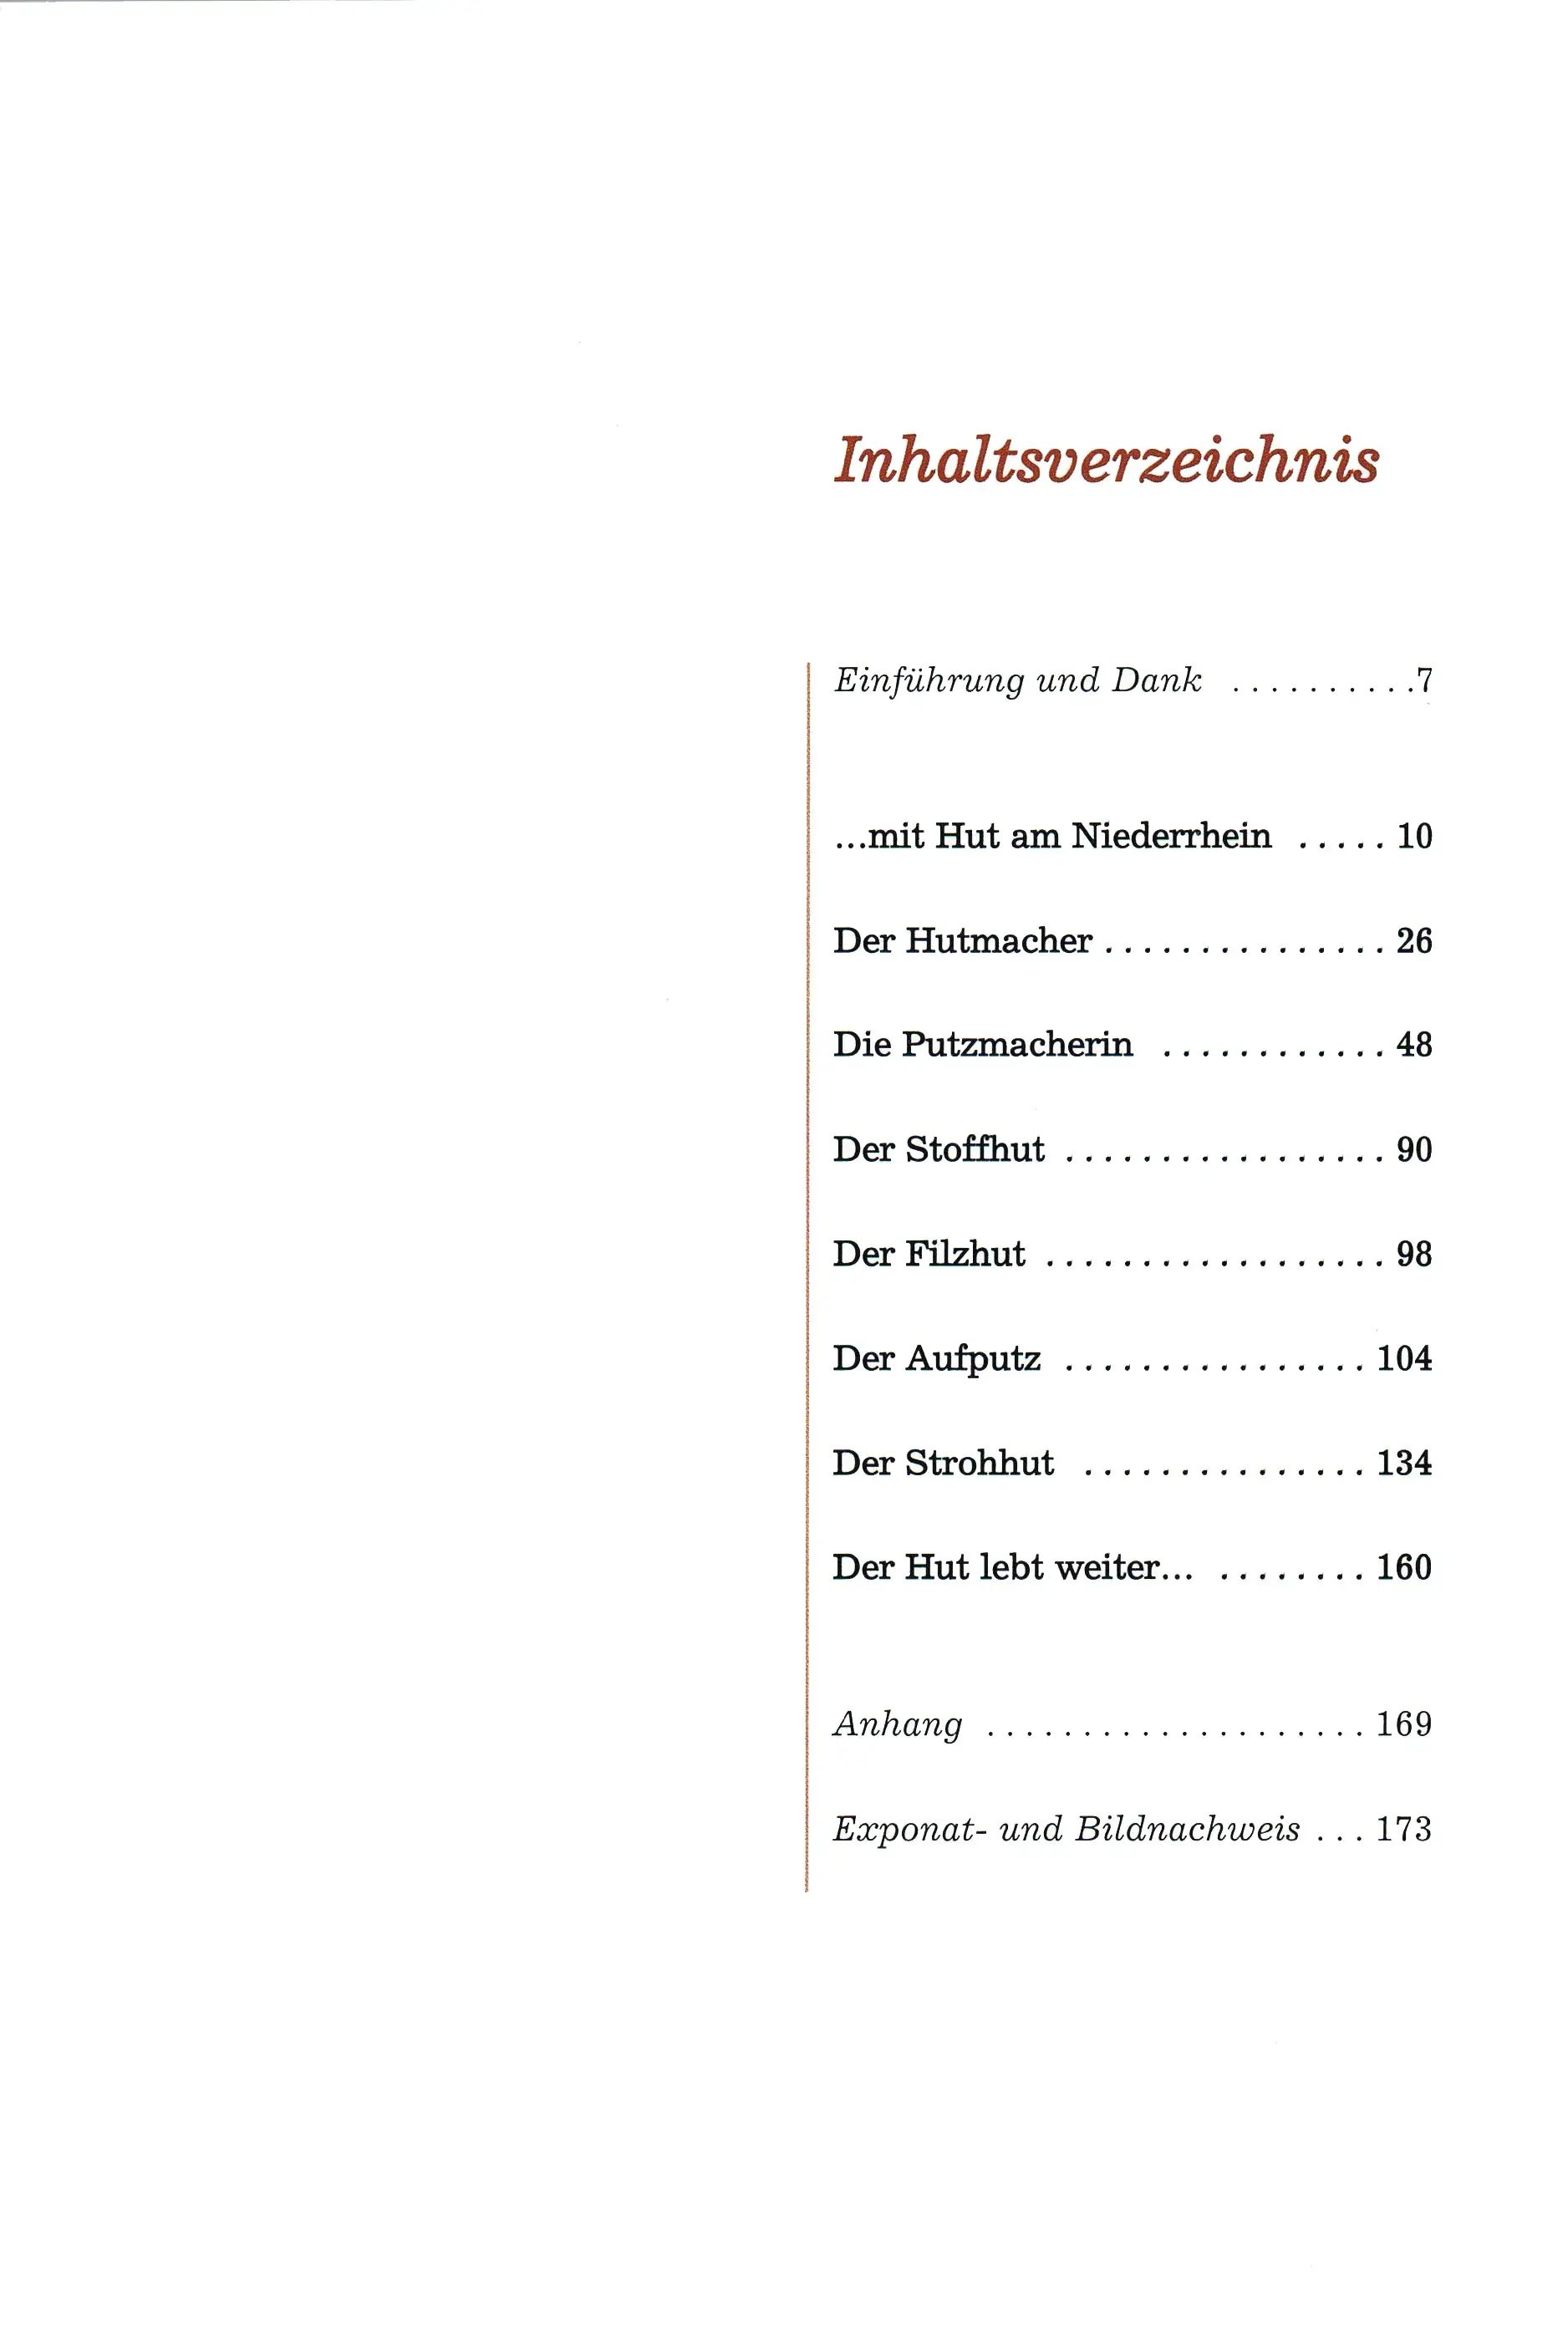 Inhaltsverzeichnis des Buches …mit Hut am Niederrhein